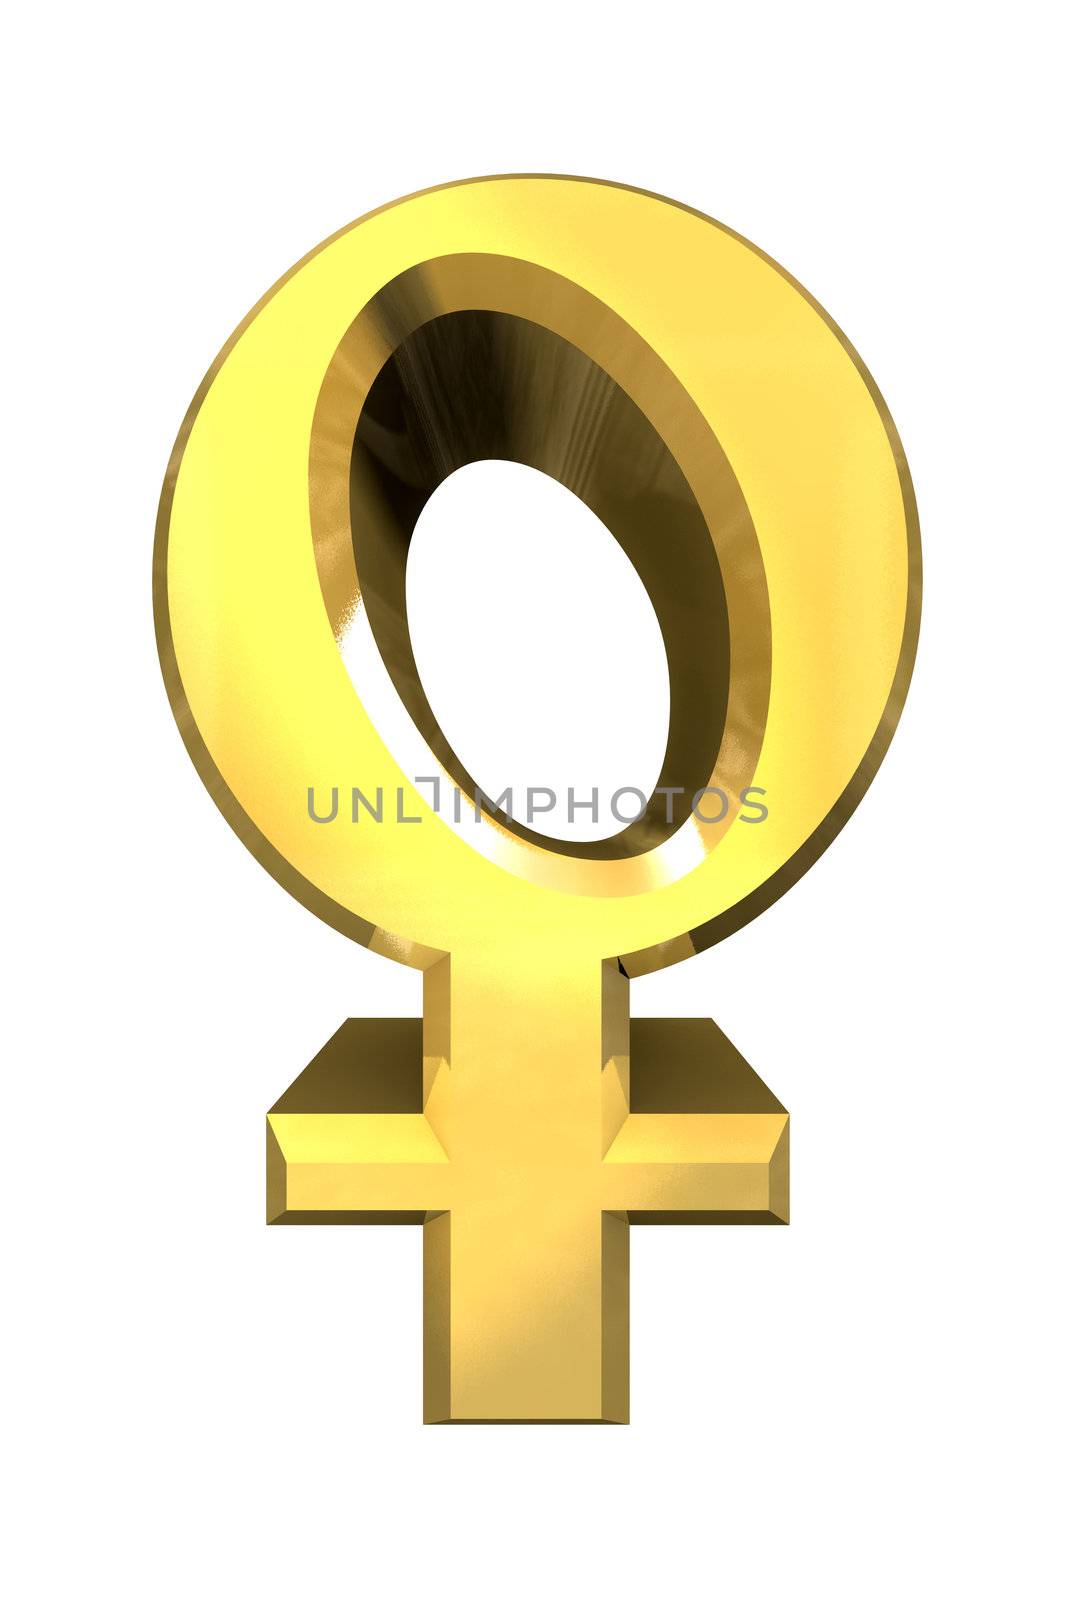 female sex symbols (3D made) 